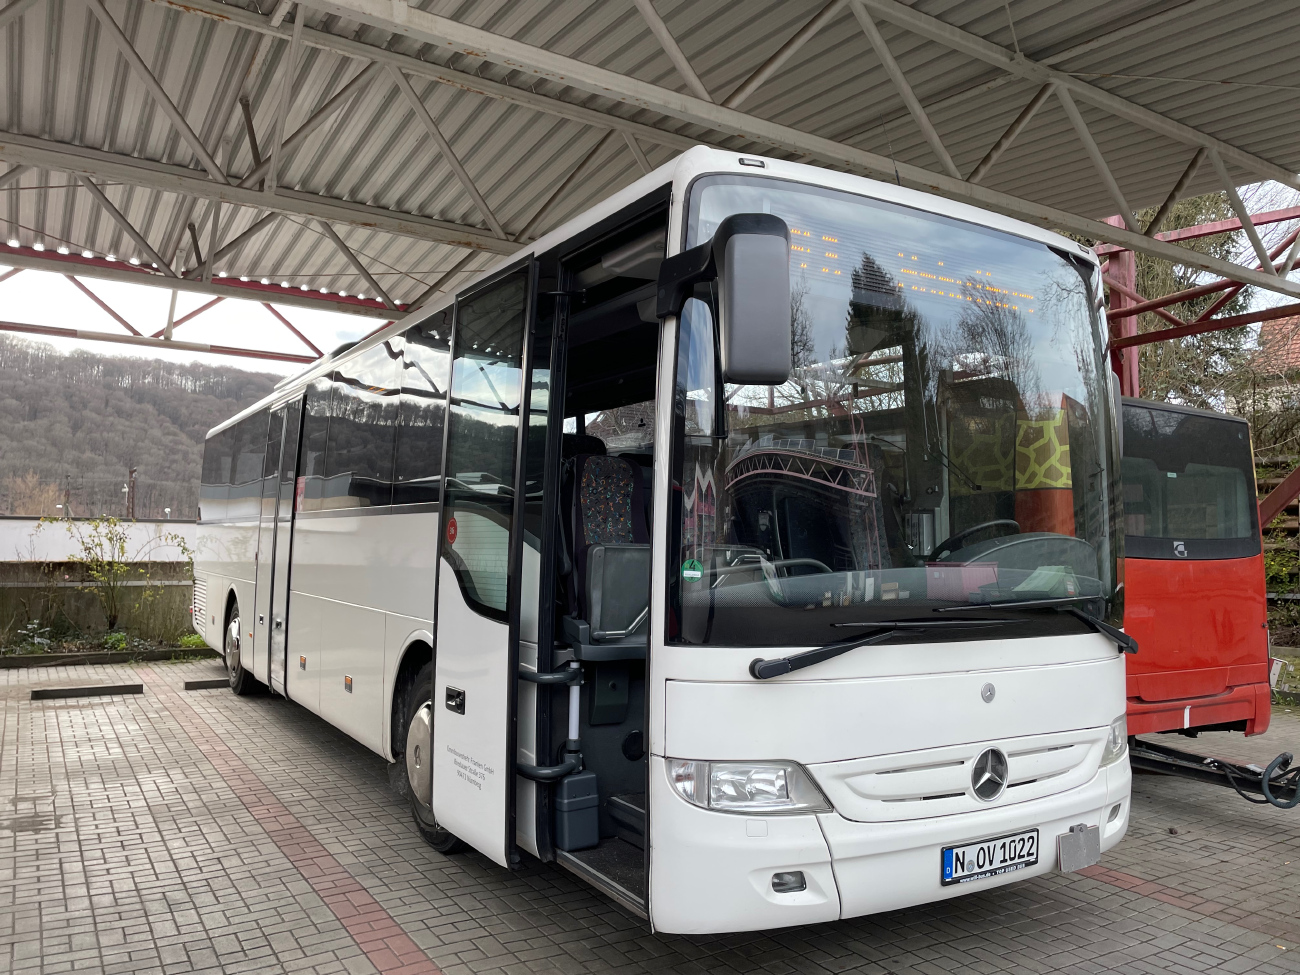 Nuremberg, Mercedes-Benz Tourismo 15RH-II # N-OV 1022